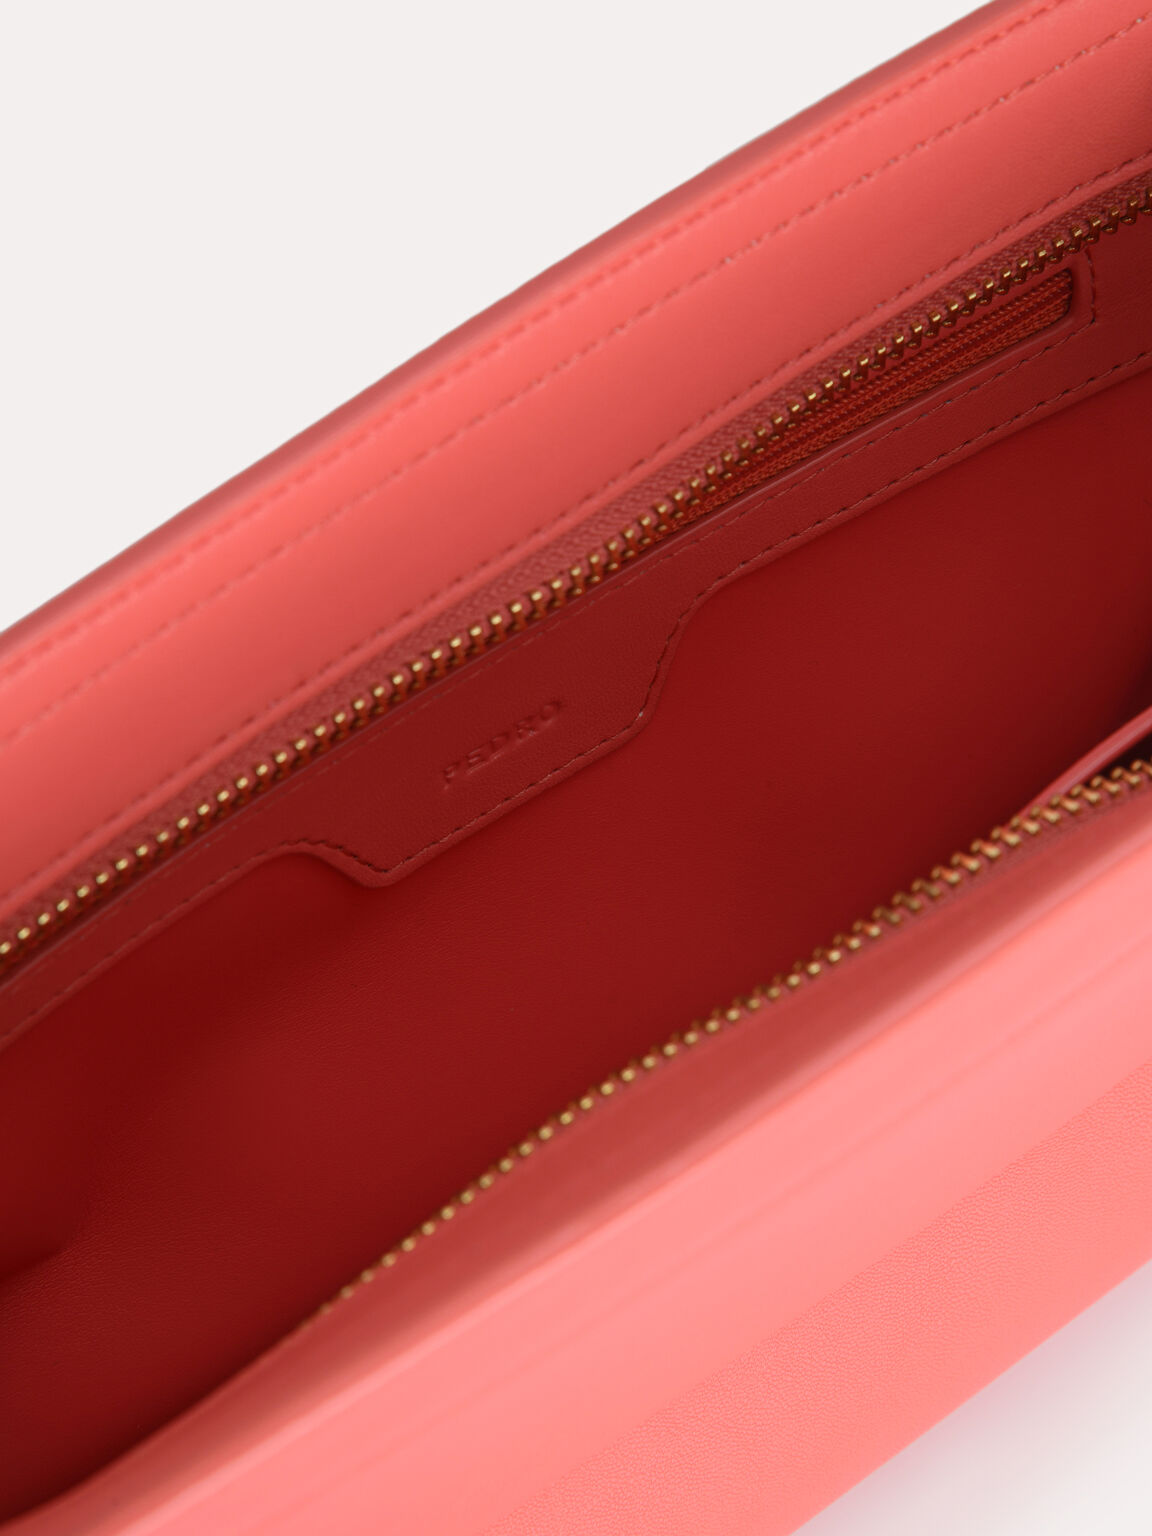 Baguette Shoulder Bag, Coral Pink